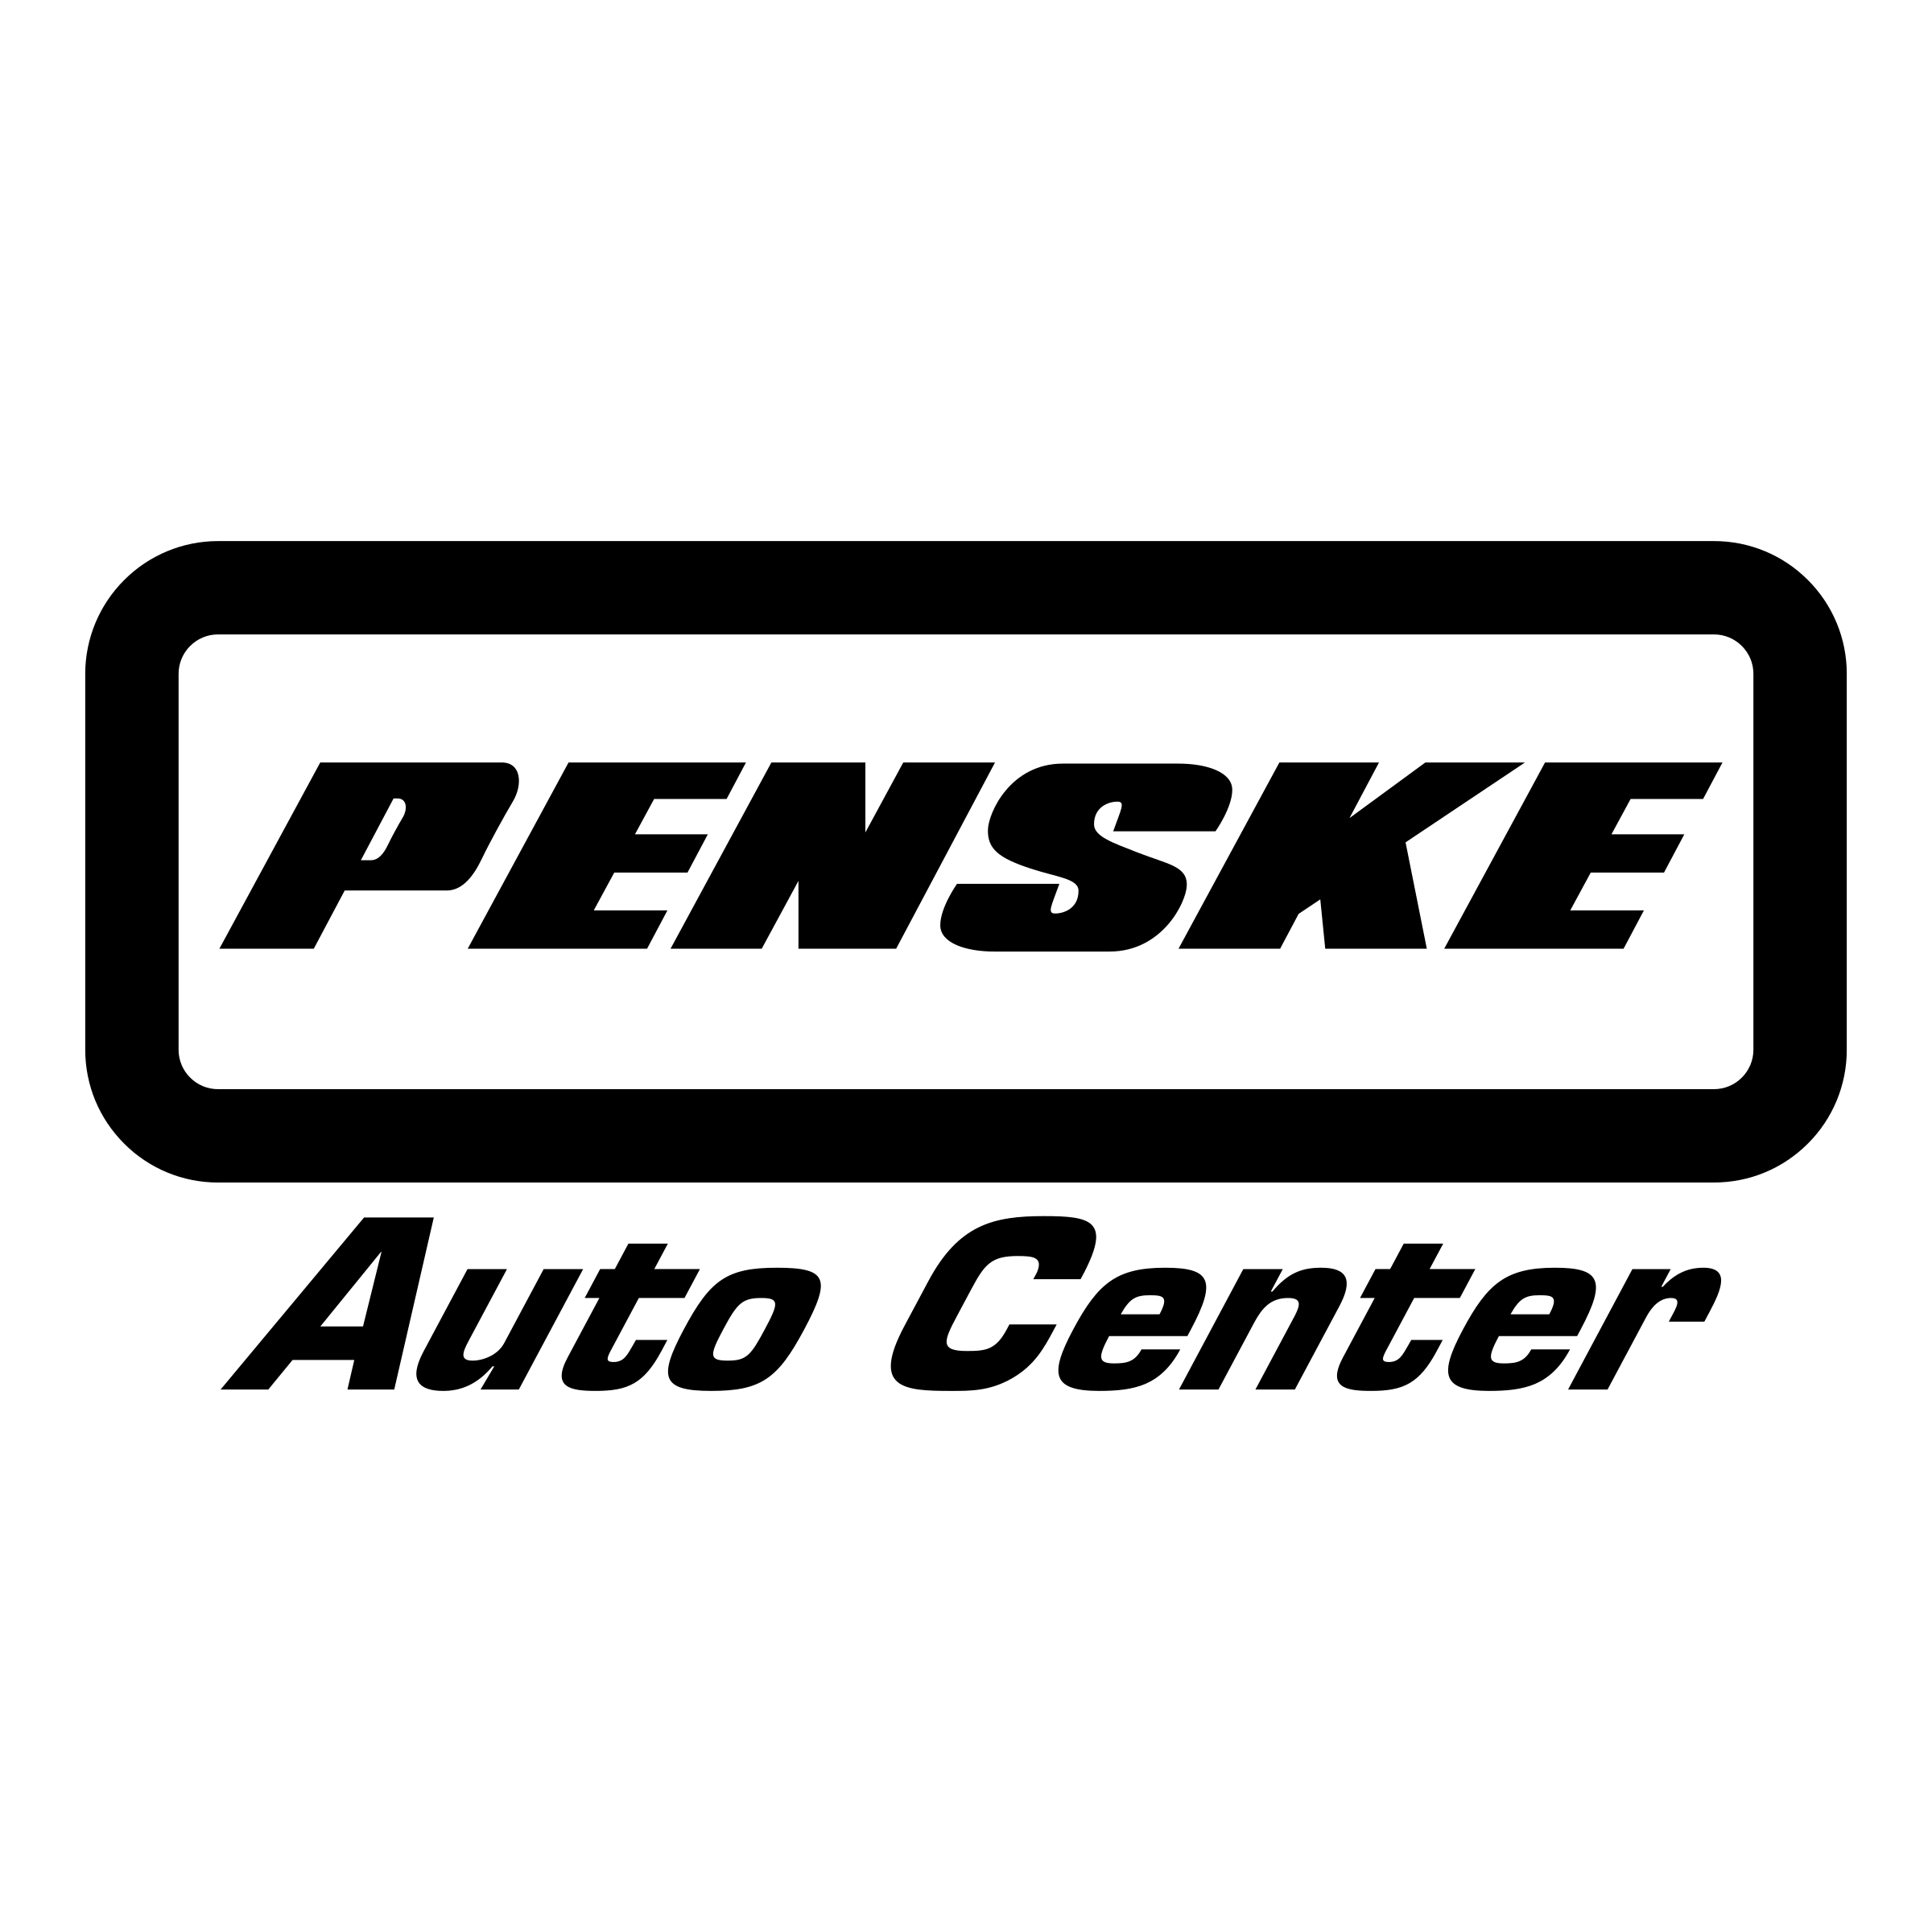 Auto Center Logo - Penske Auto Center Logo PNG Transparent & SVG Vector